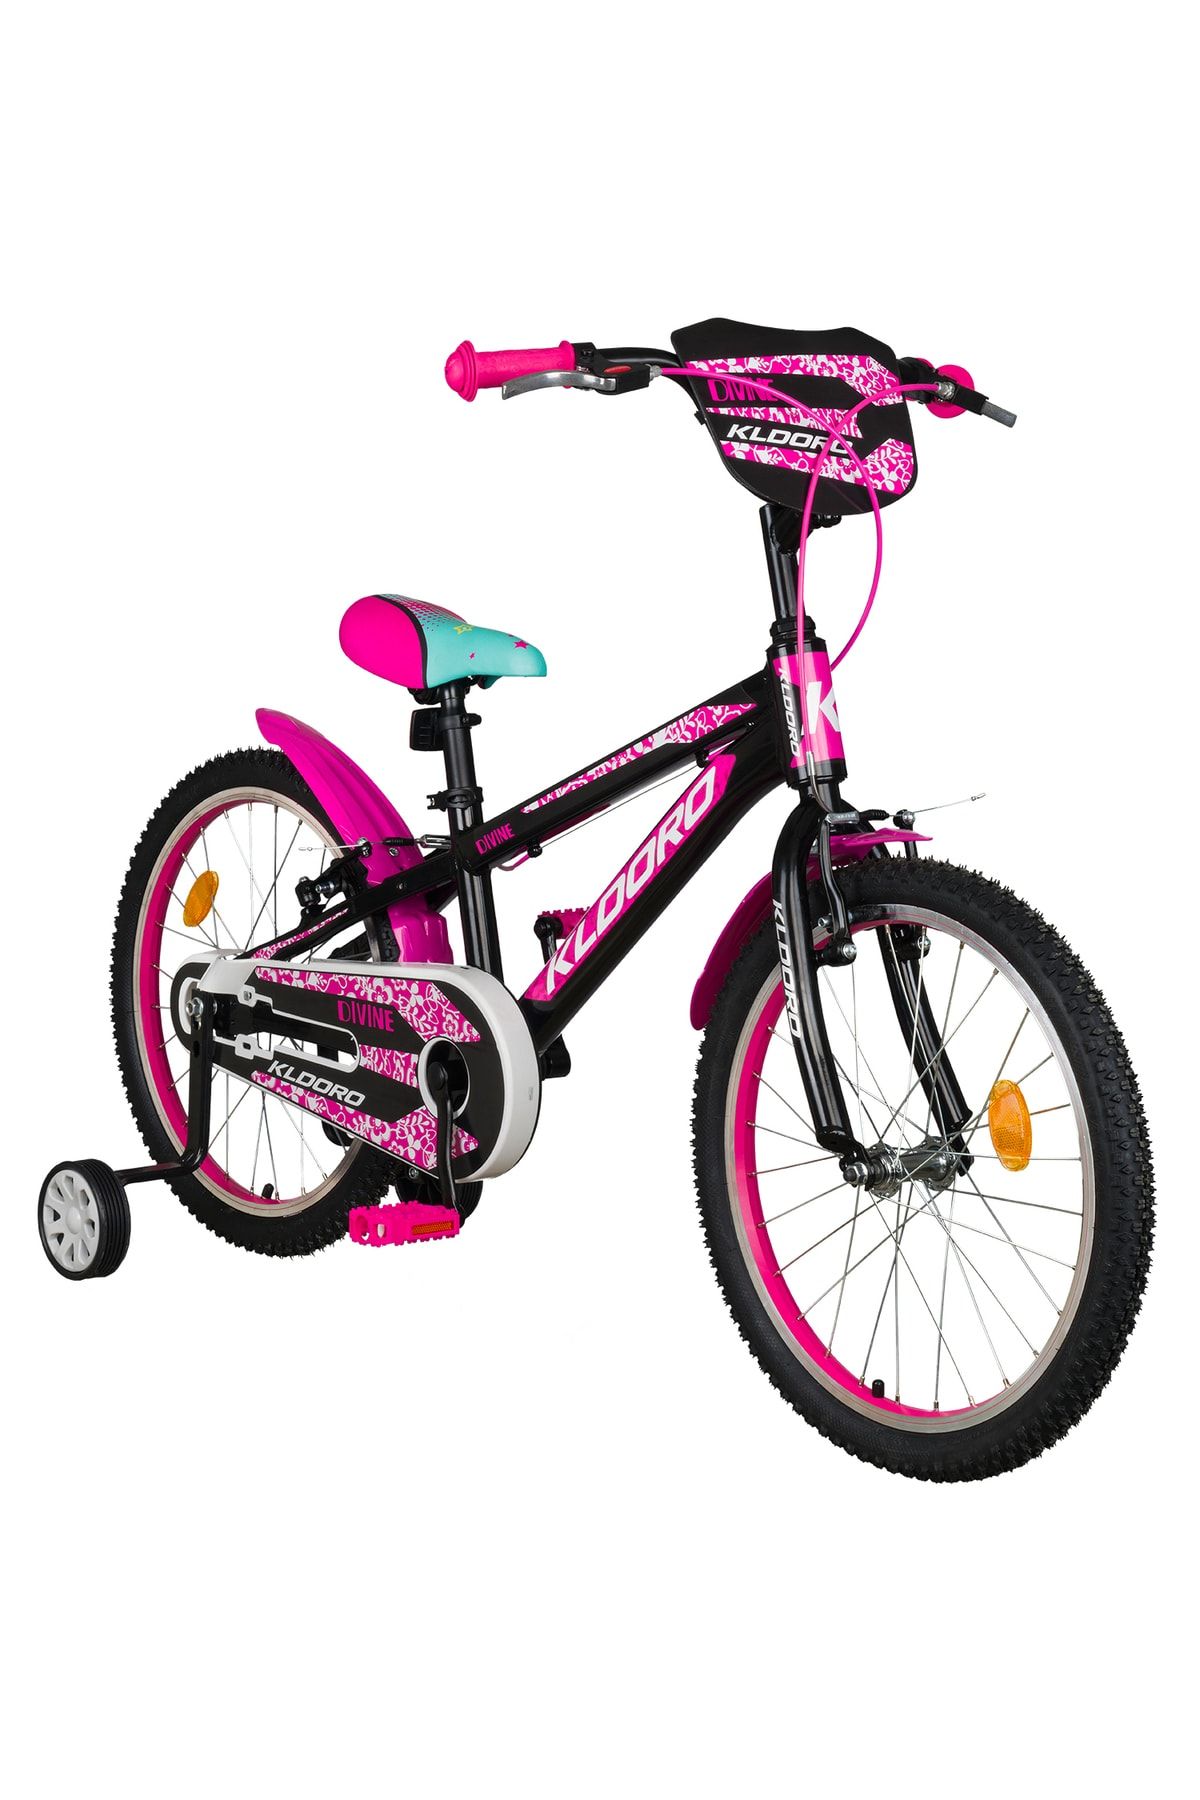 Kldoro Divine 20 Jant Bisiklet Kız Çocuk Bisikleti 000169.000052